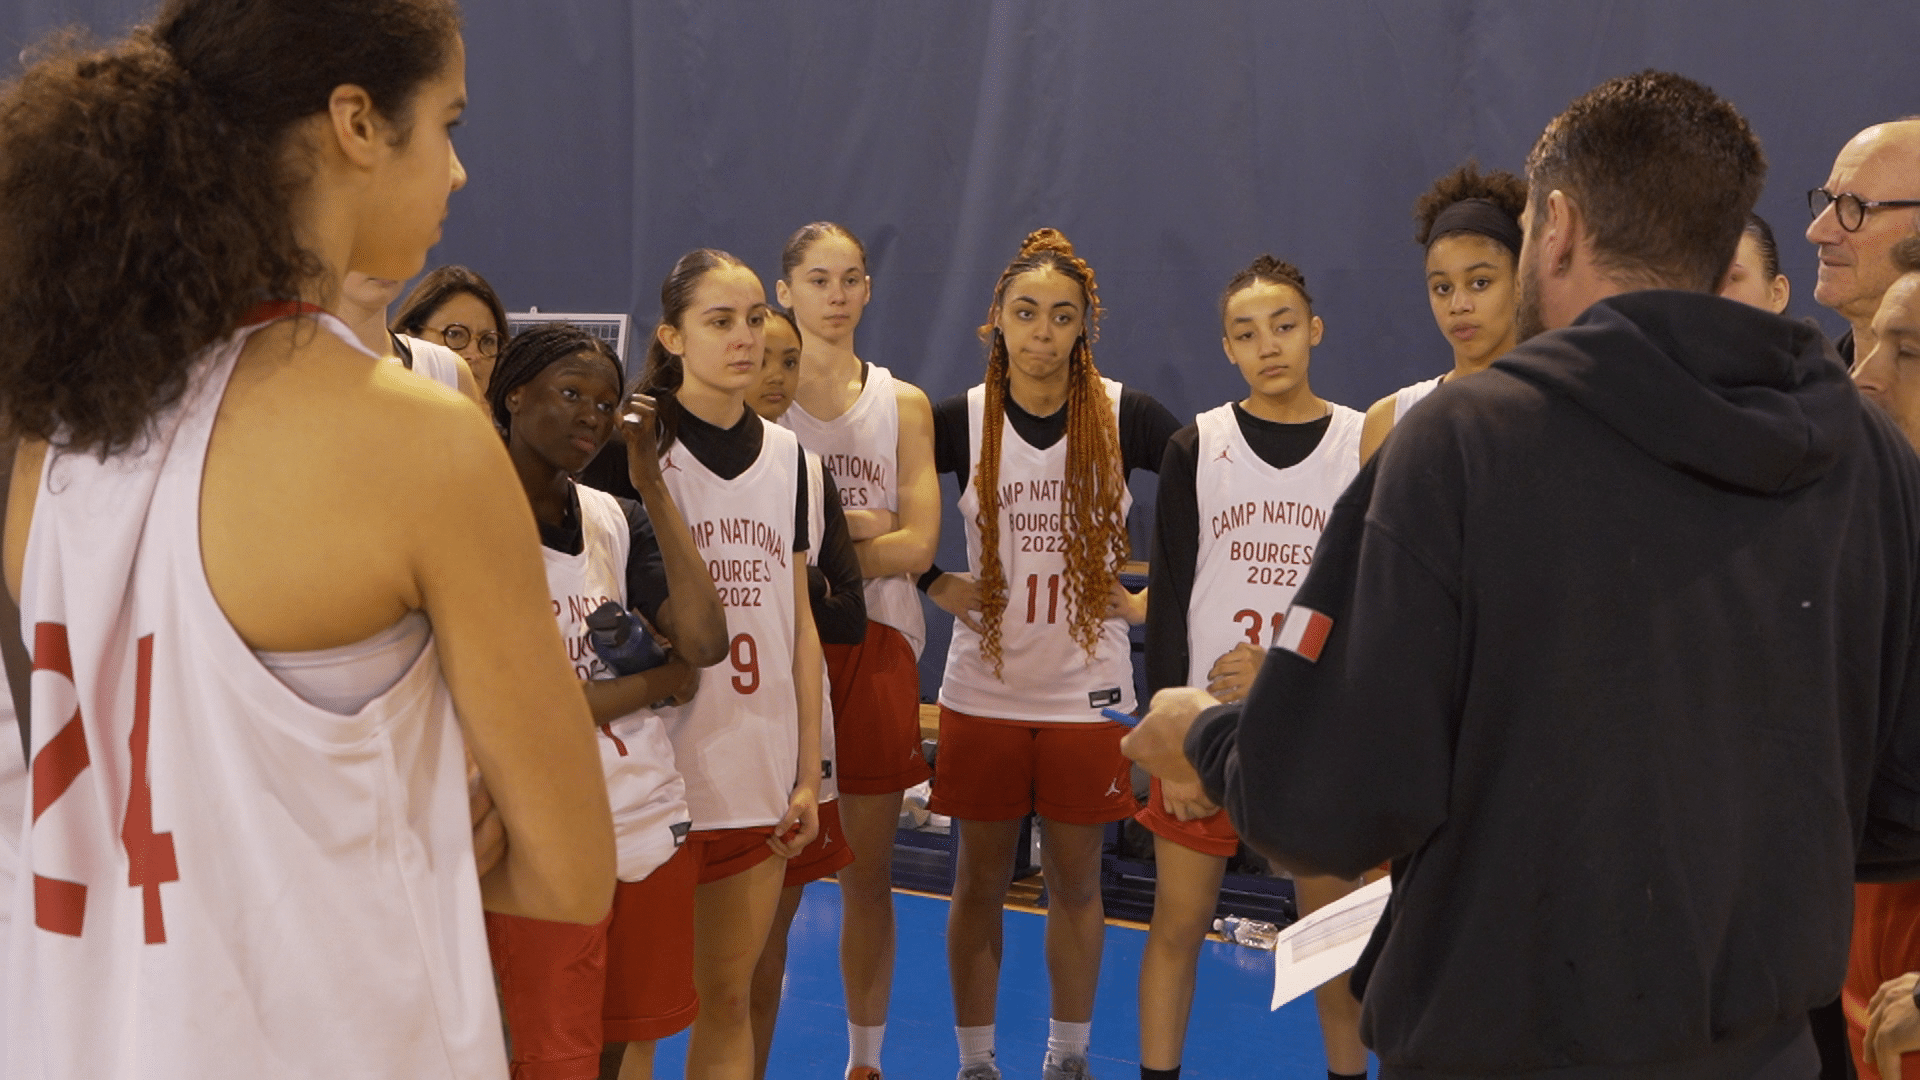 Le Pôle féminin – Basket Paris 14